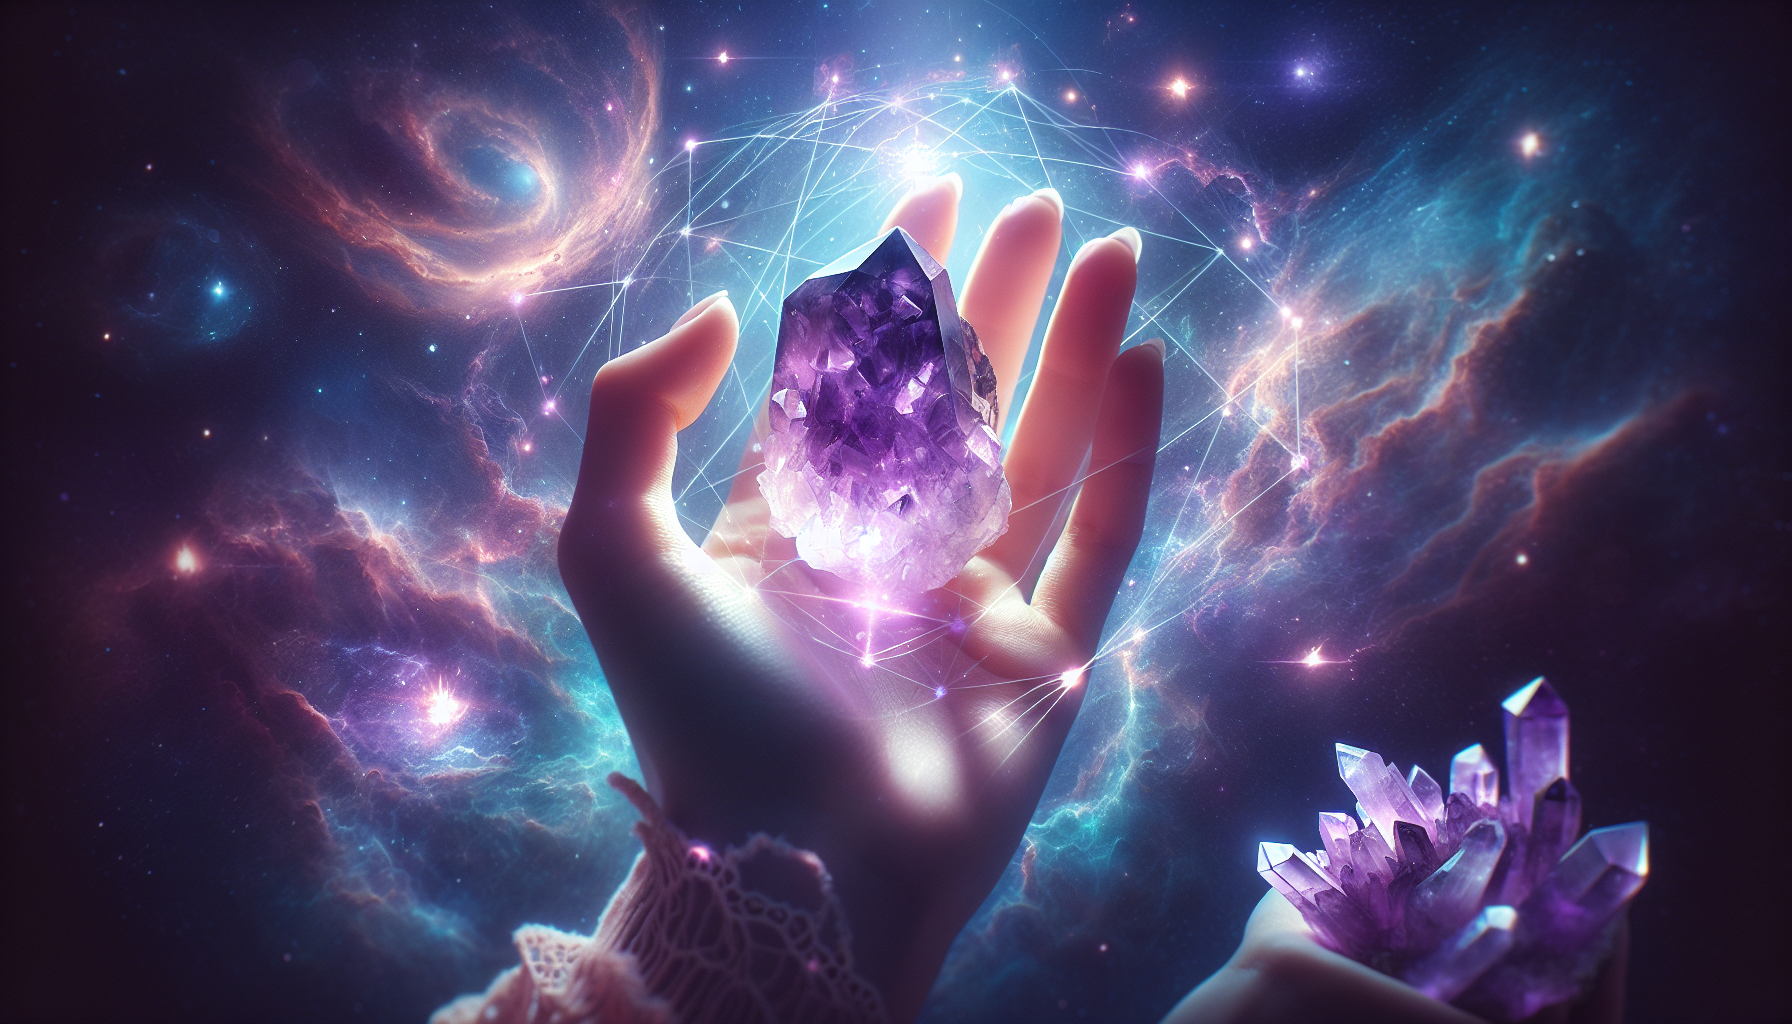 Metaphysical properties of purple gems